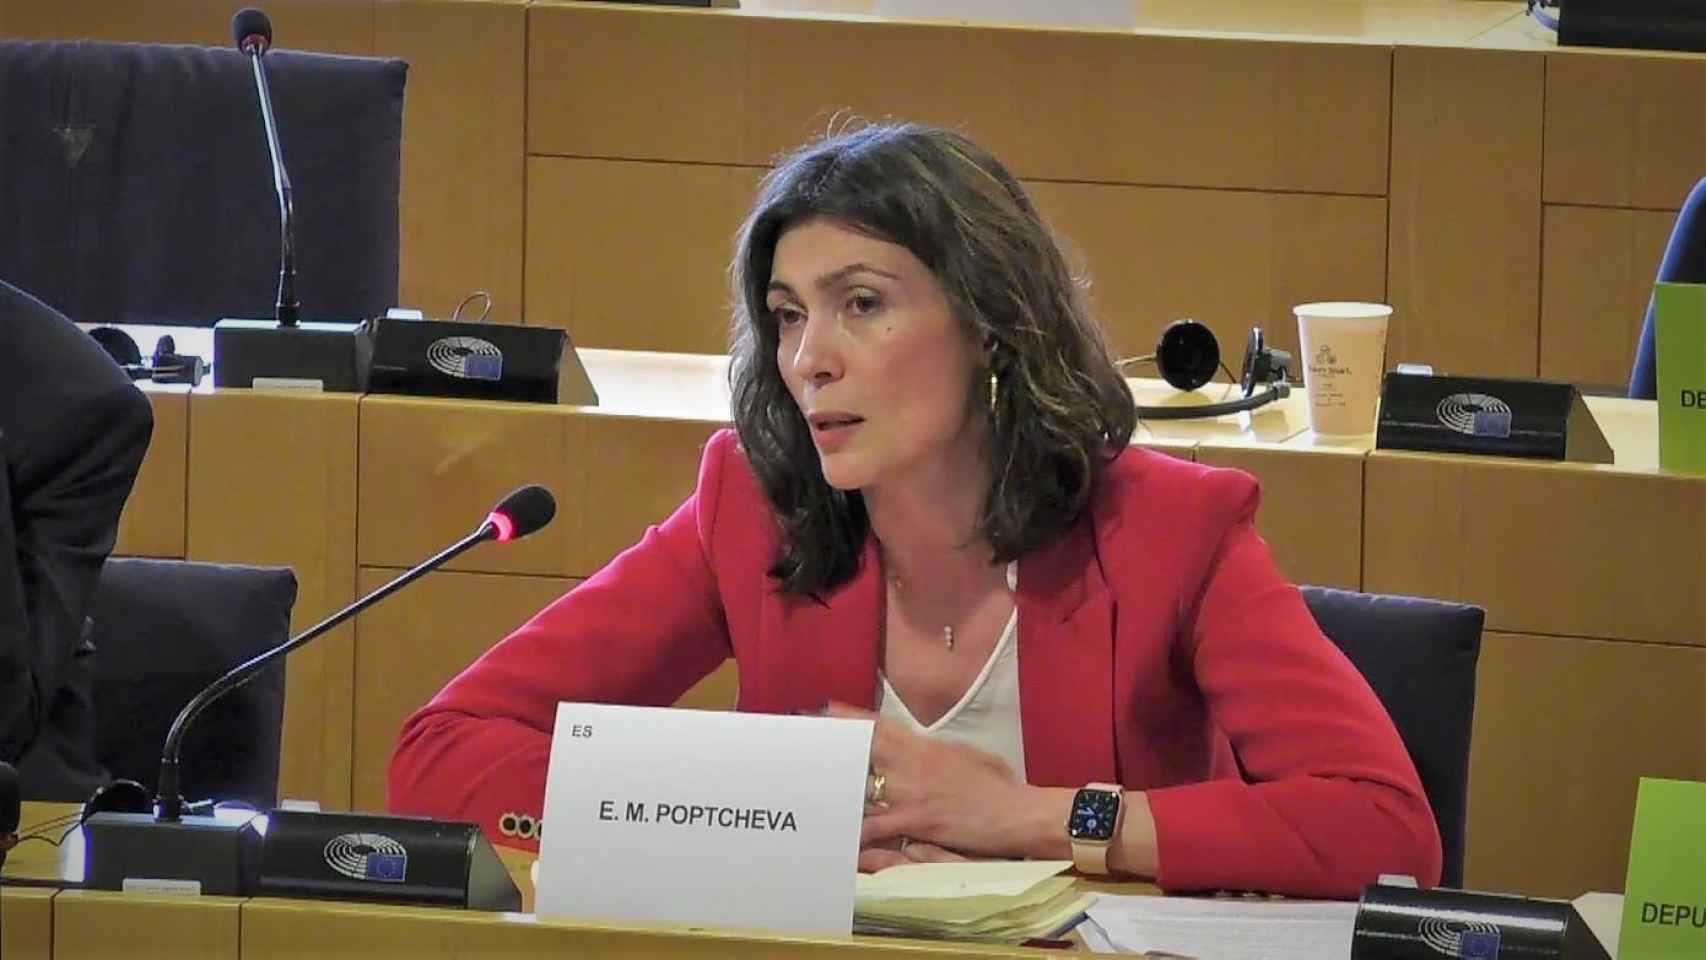 La eurodiputada Eva Poptcheva (Cs) interviene ante el Comité de Control Presupuestario del Parlamento Europeo.